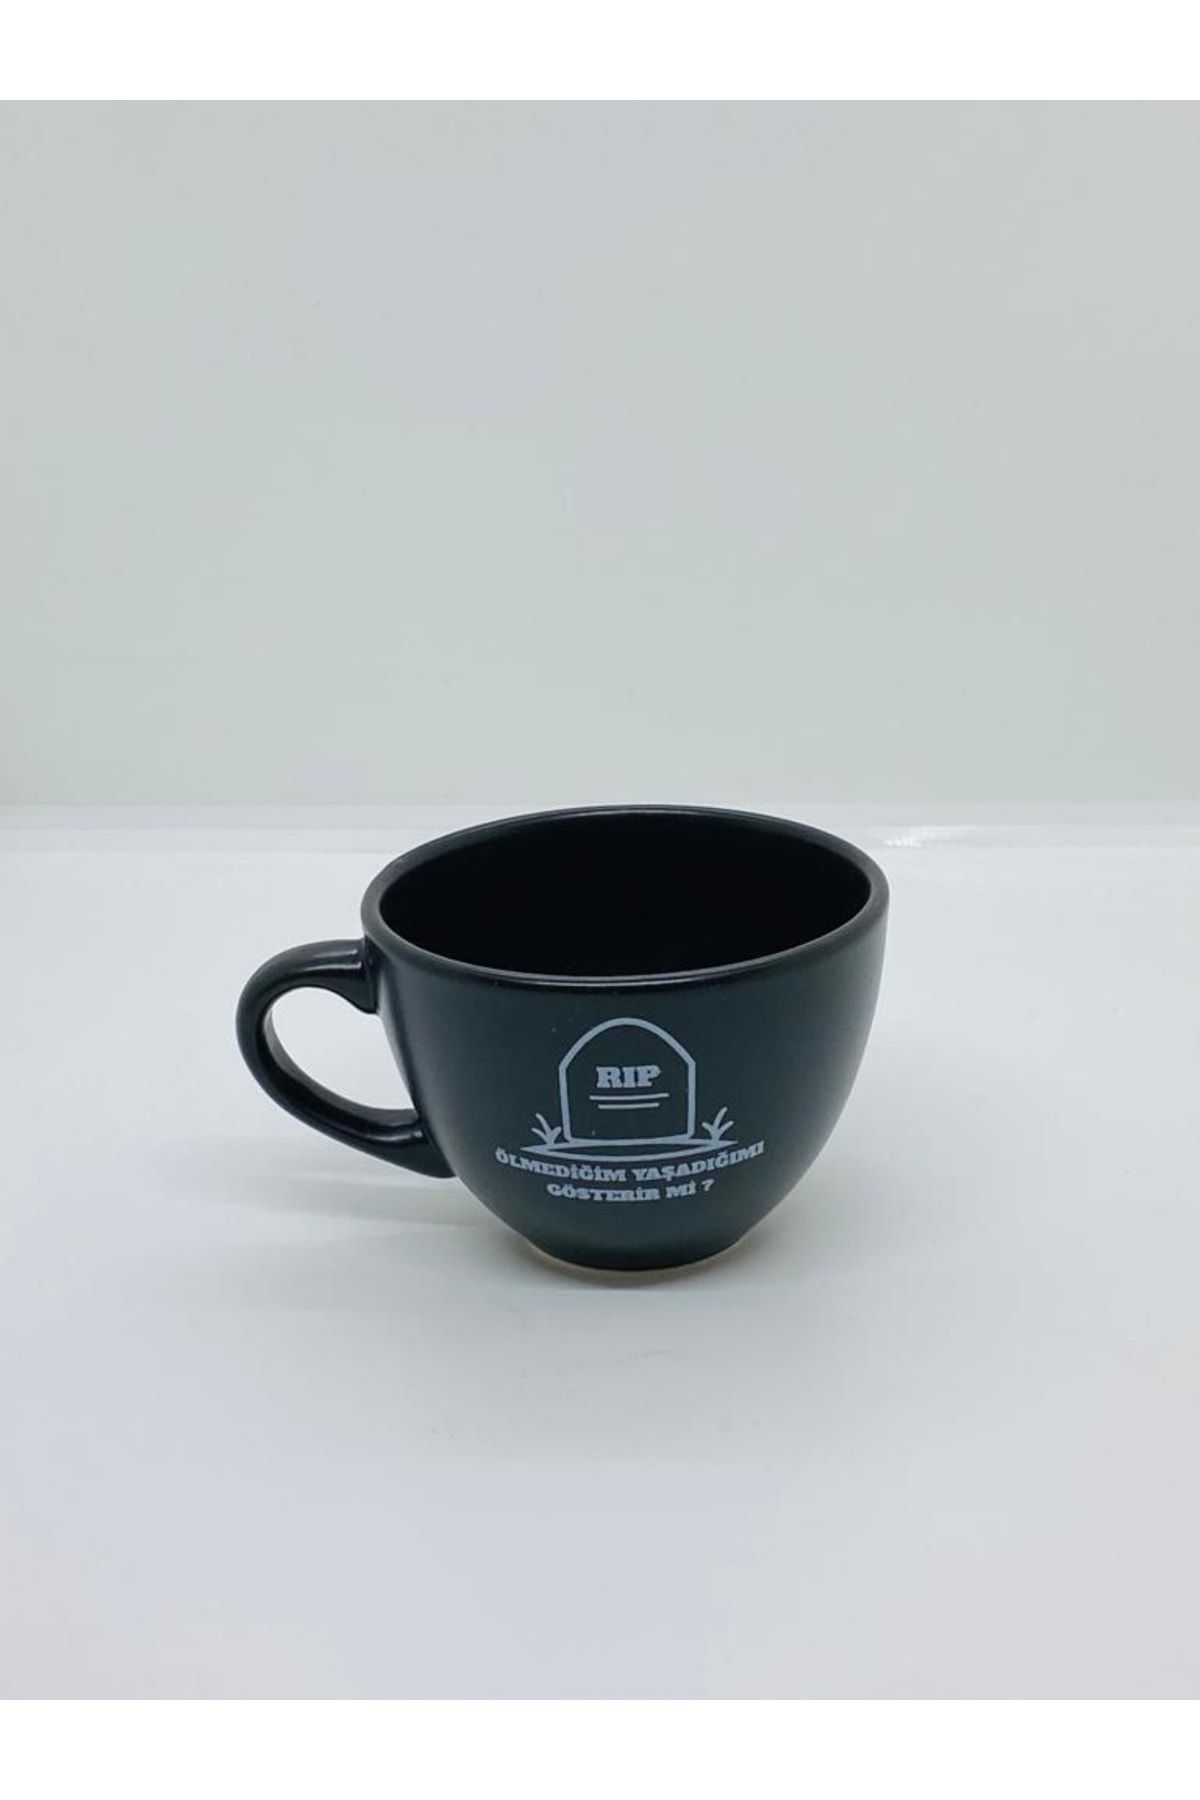 Retina Shop Rip Ölmediğim Yaşadığımı Gösterir Mi Mat Siyah Çay Fincanı